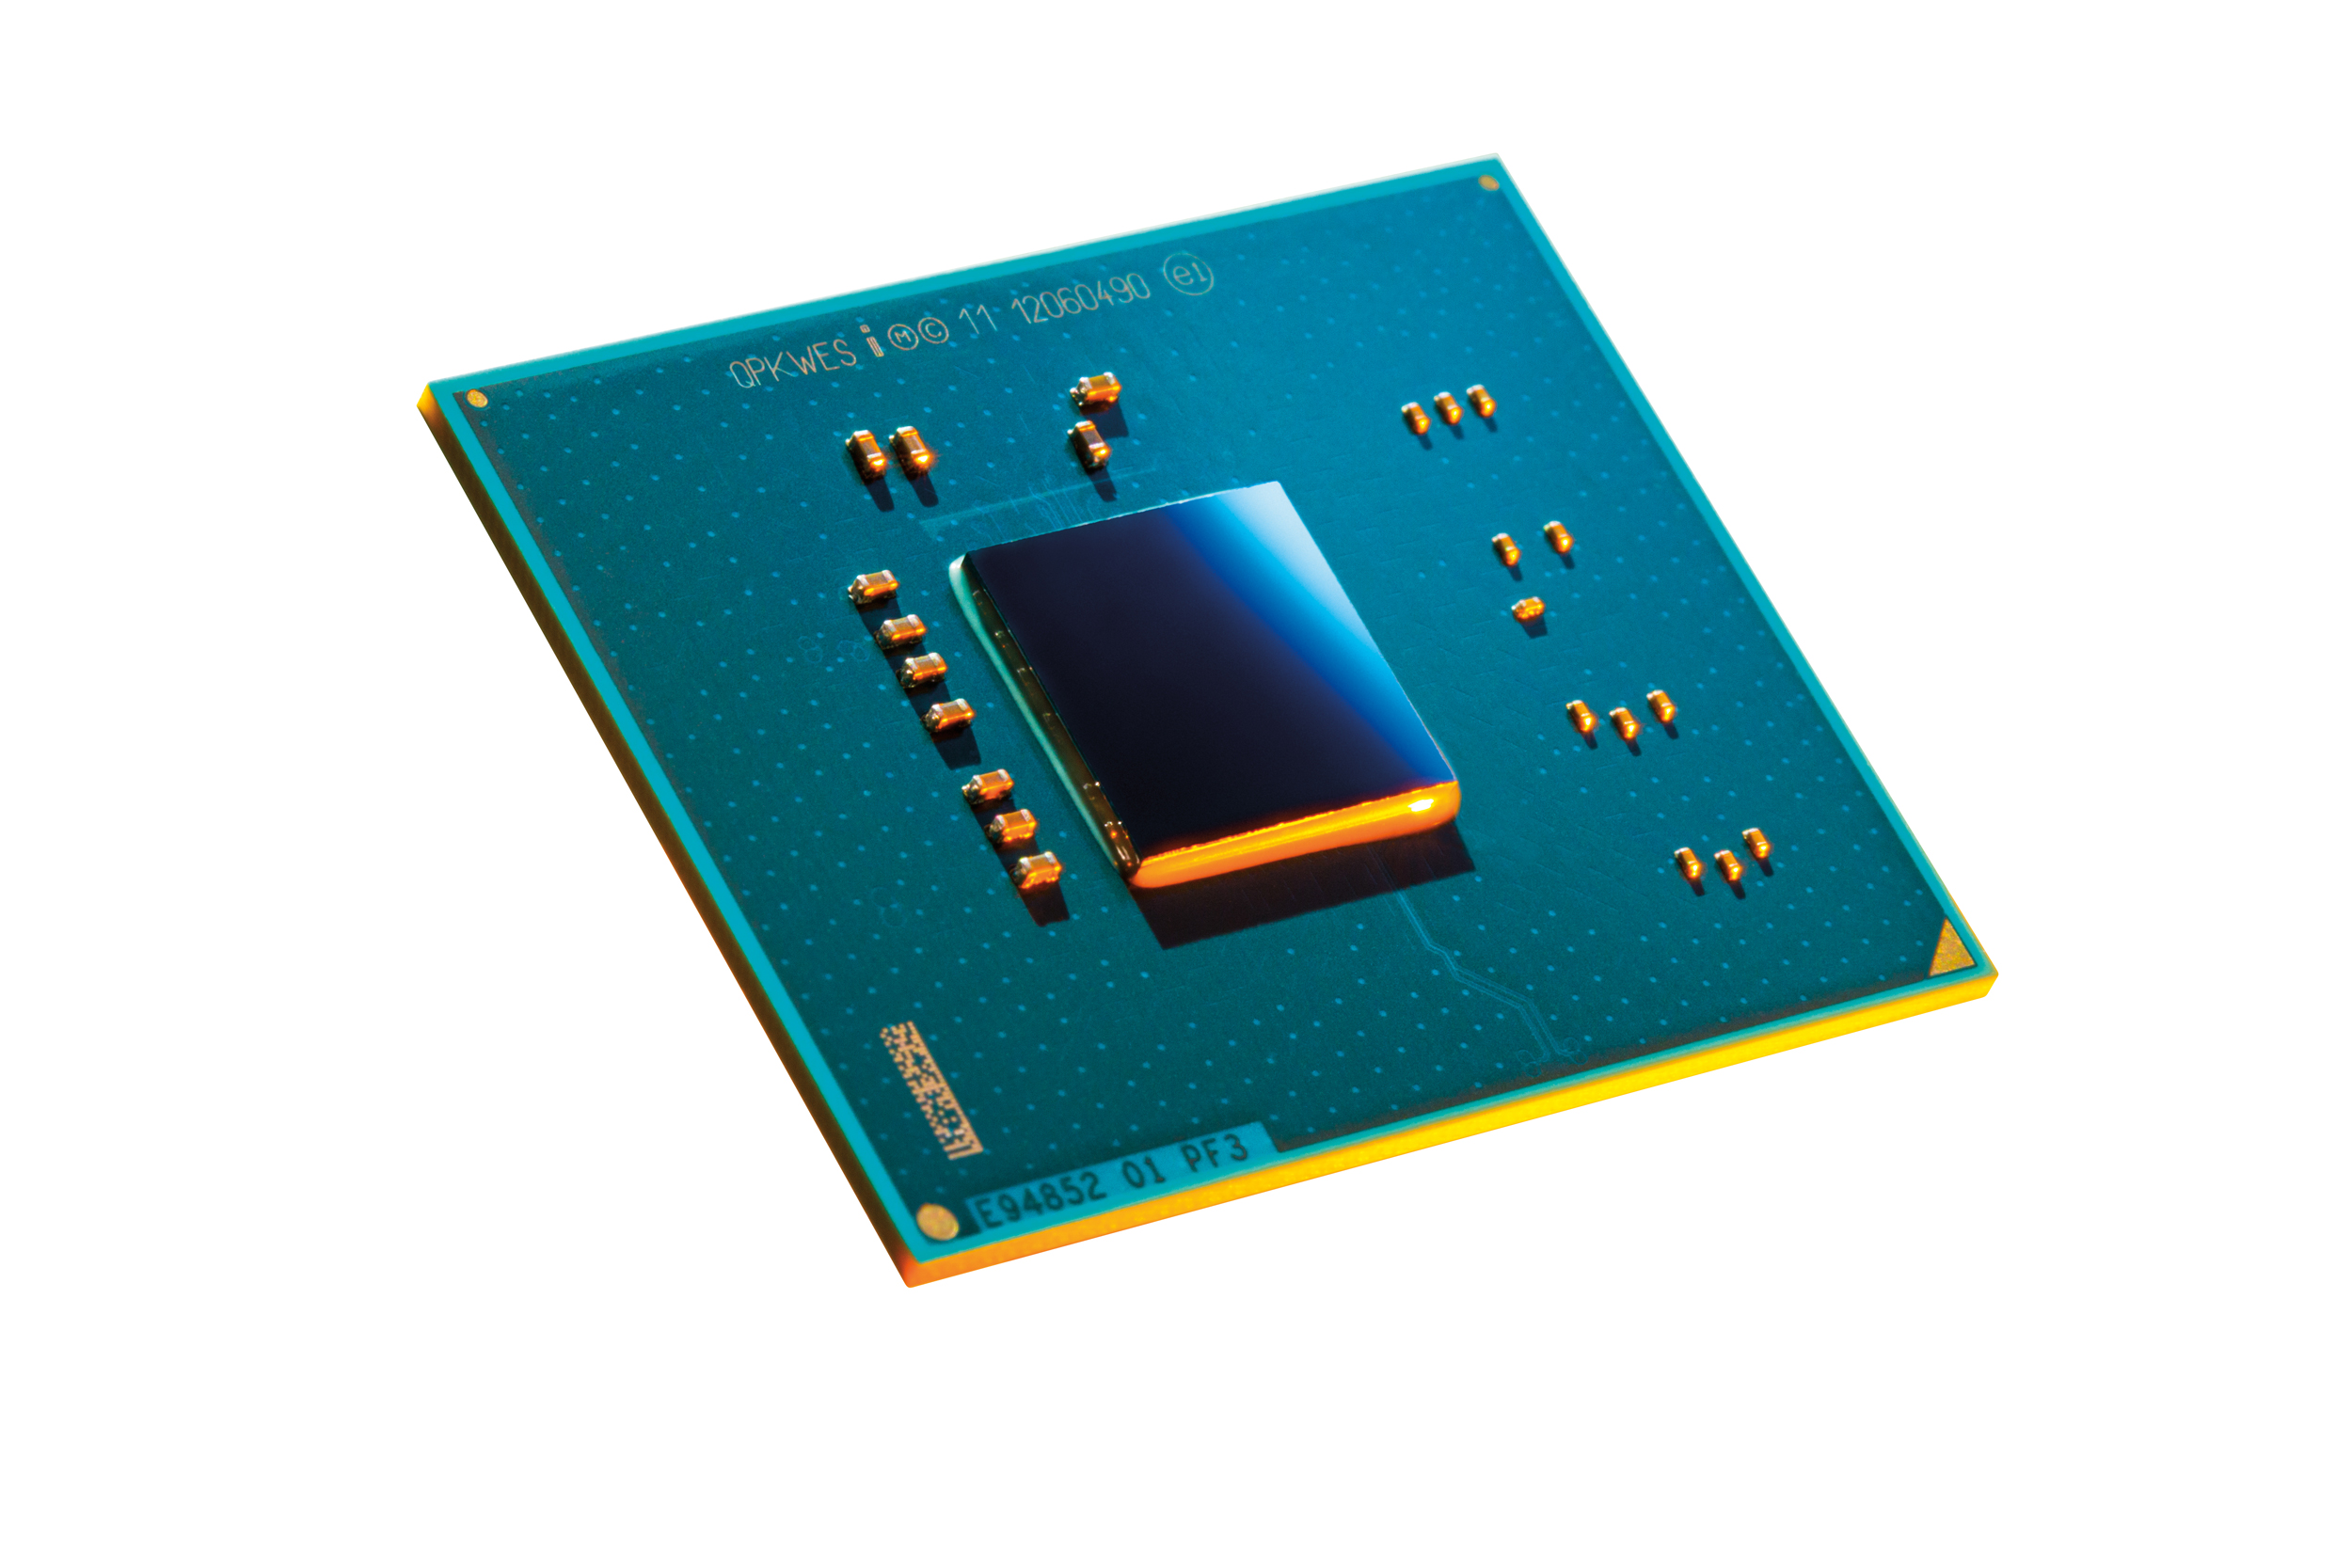 Immagine pubblicata in relazione al seguente contenuto: Intel annuncia i processori server-class Atom S1200 con TDP di 6W | Nome immagine: news18544_Intel-Atom-S1200_1.jpg